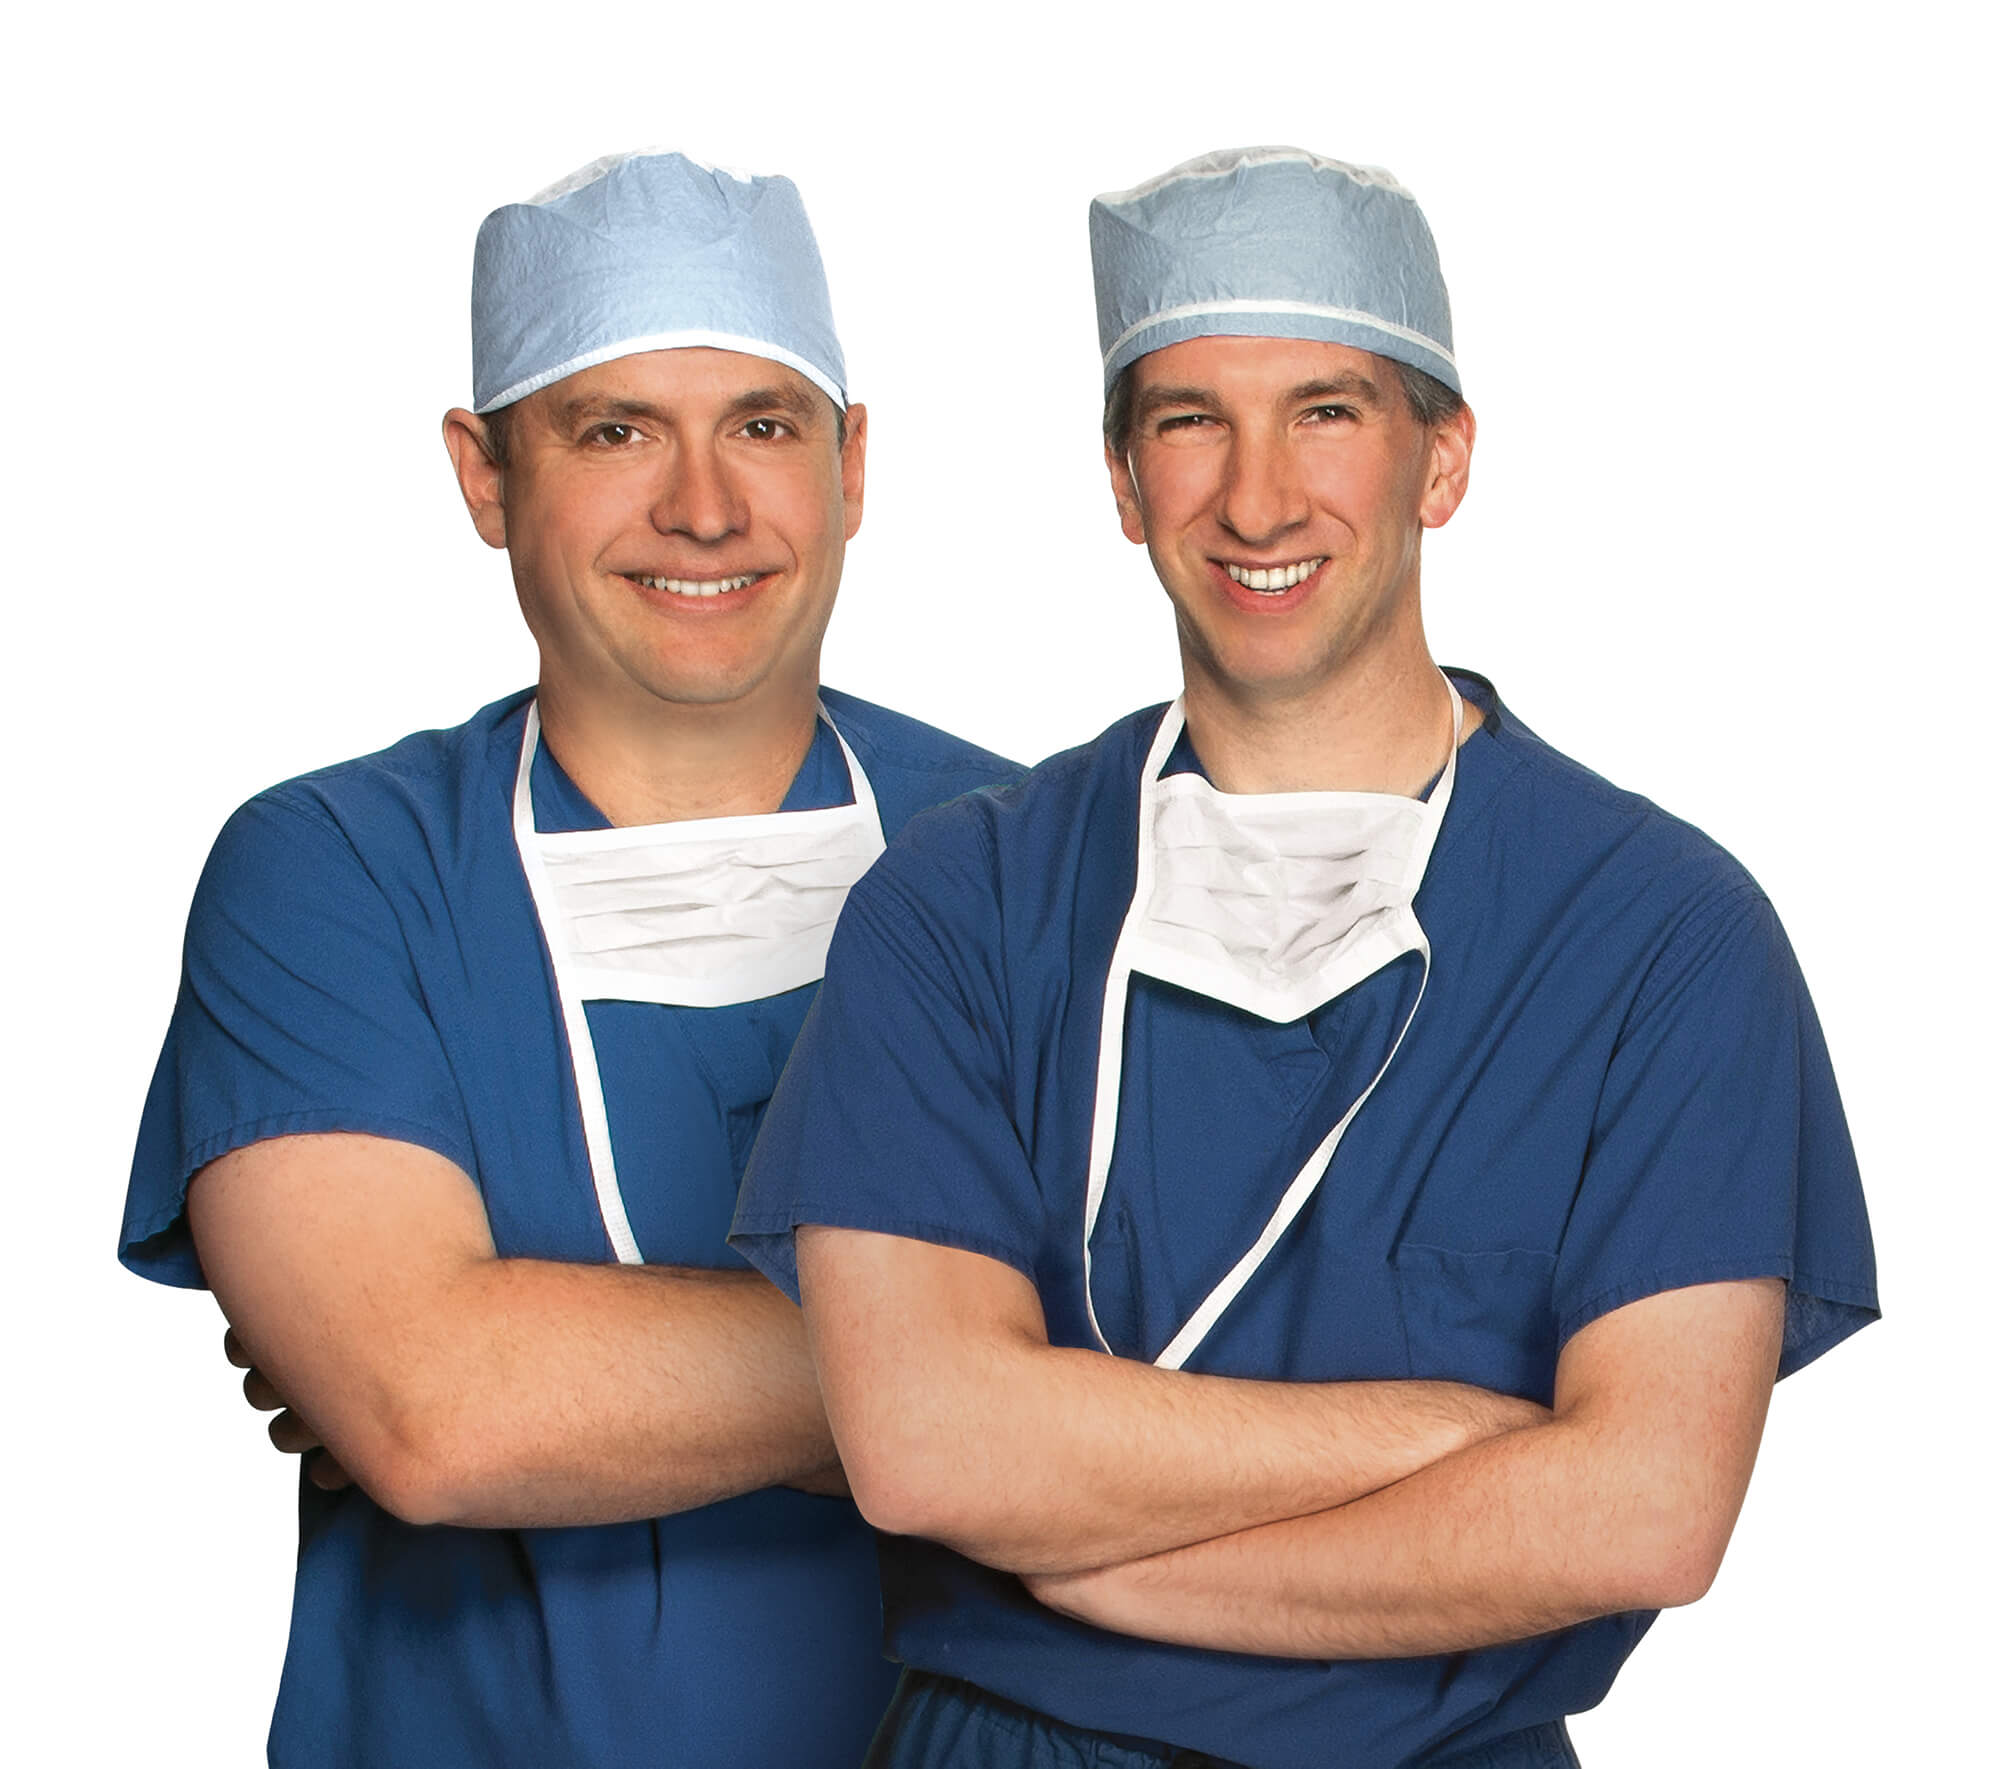 Tiến sĩ Adam Altman, MD và Tiến sĩ Jonathan Primack, MD là các chuyên gia LASIK tại Eye Consultants của PA. Họ là bác sĩ phẫu thuật nhãn khoa thực hiện phẫu thuật mắt bằng laser, phẫu thuật PRK, phẫu thuật giác mạc và phẫu thuật đục thủy tinh thể.